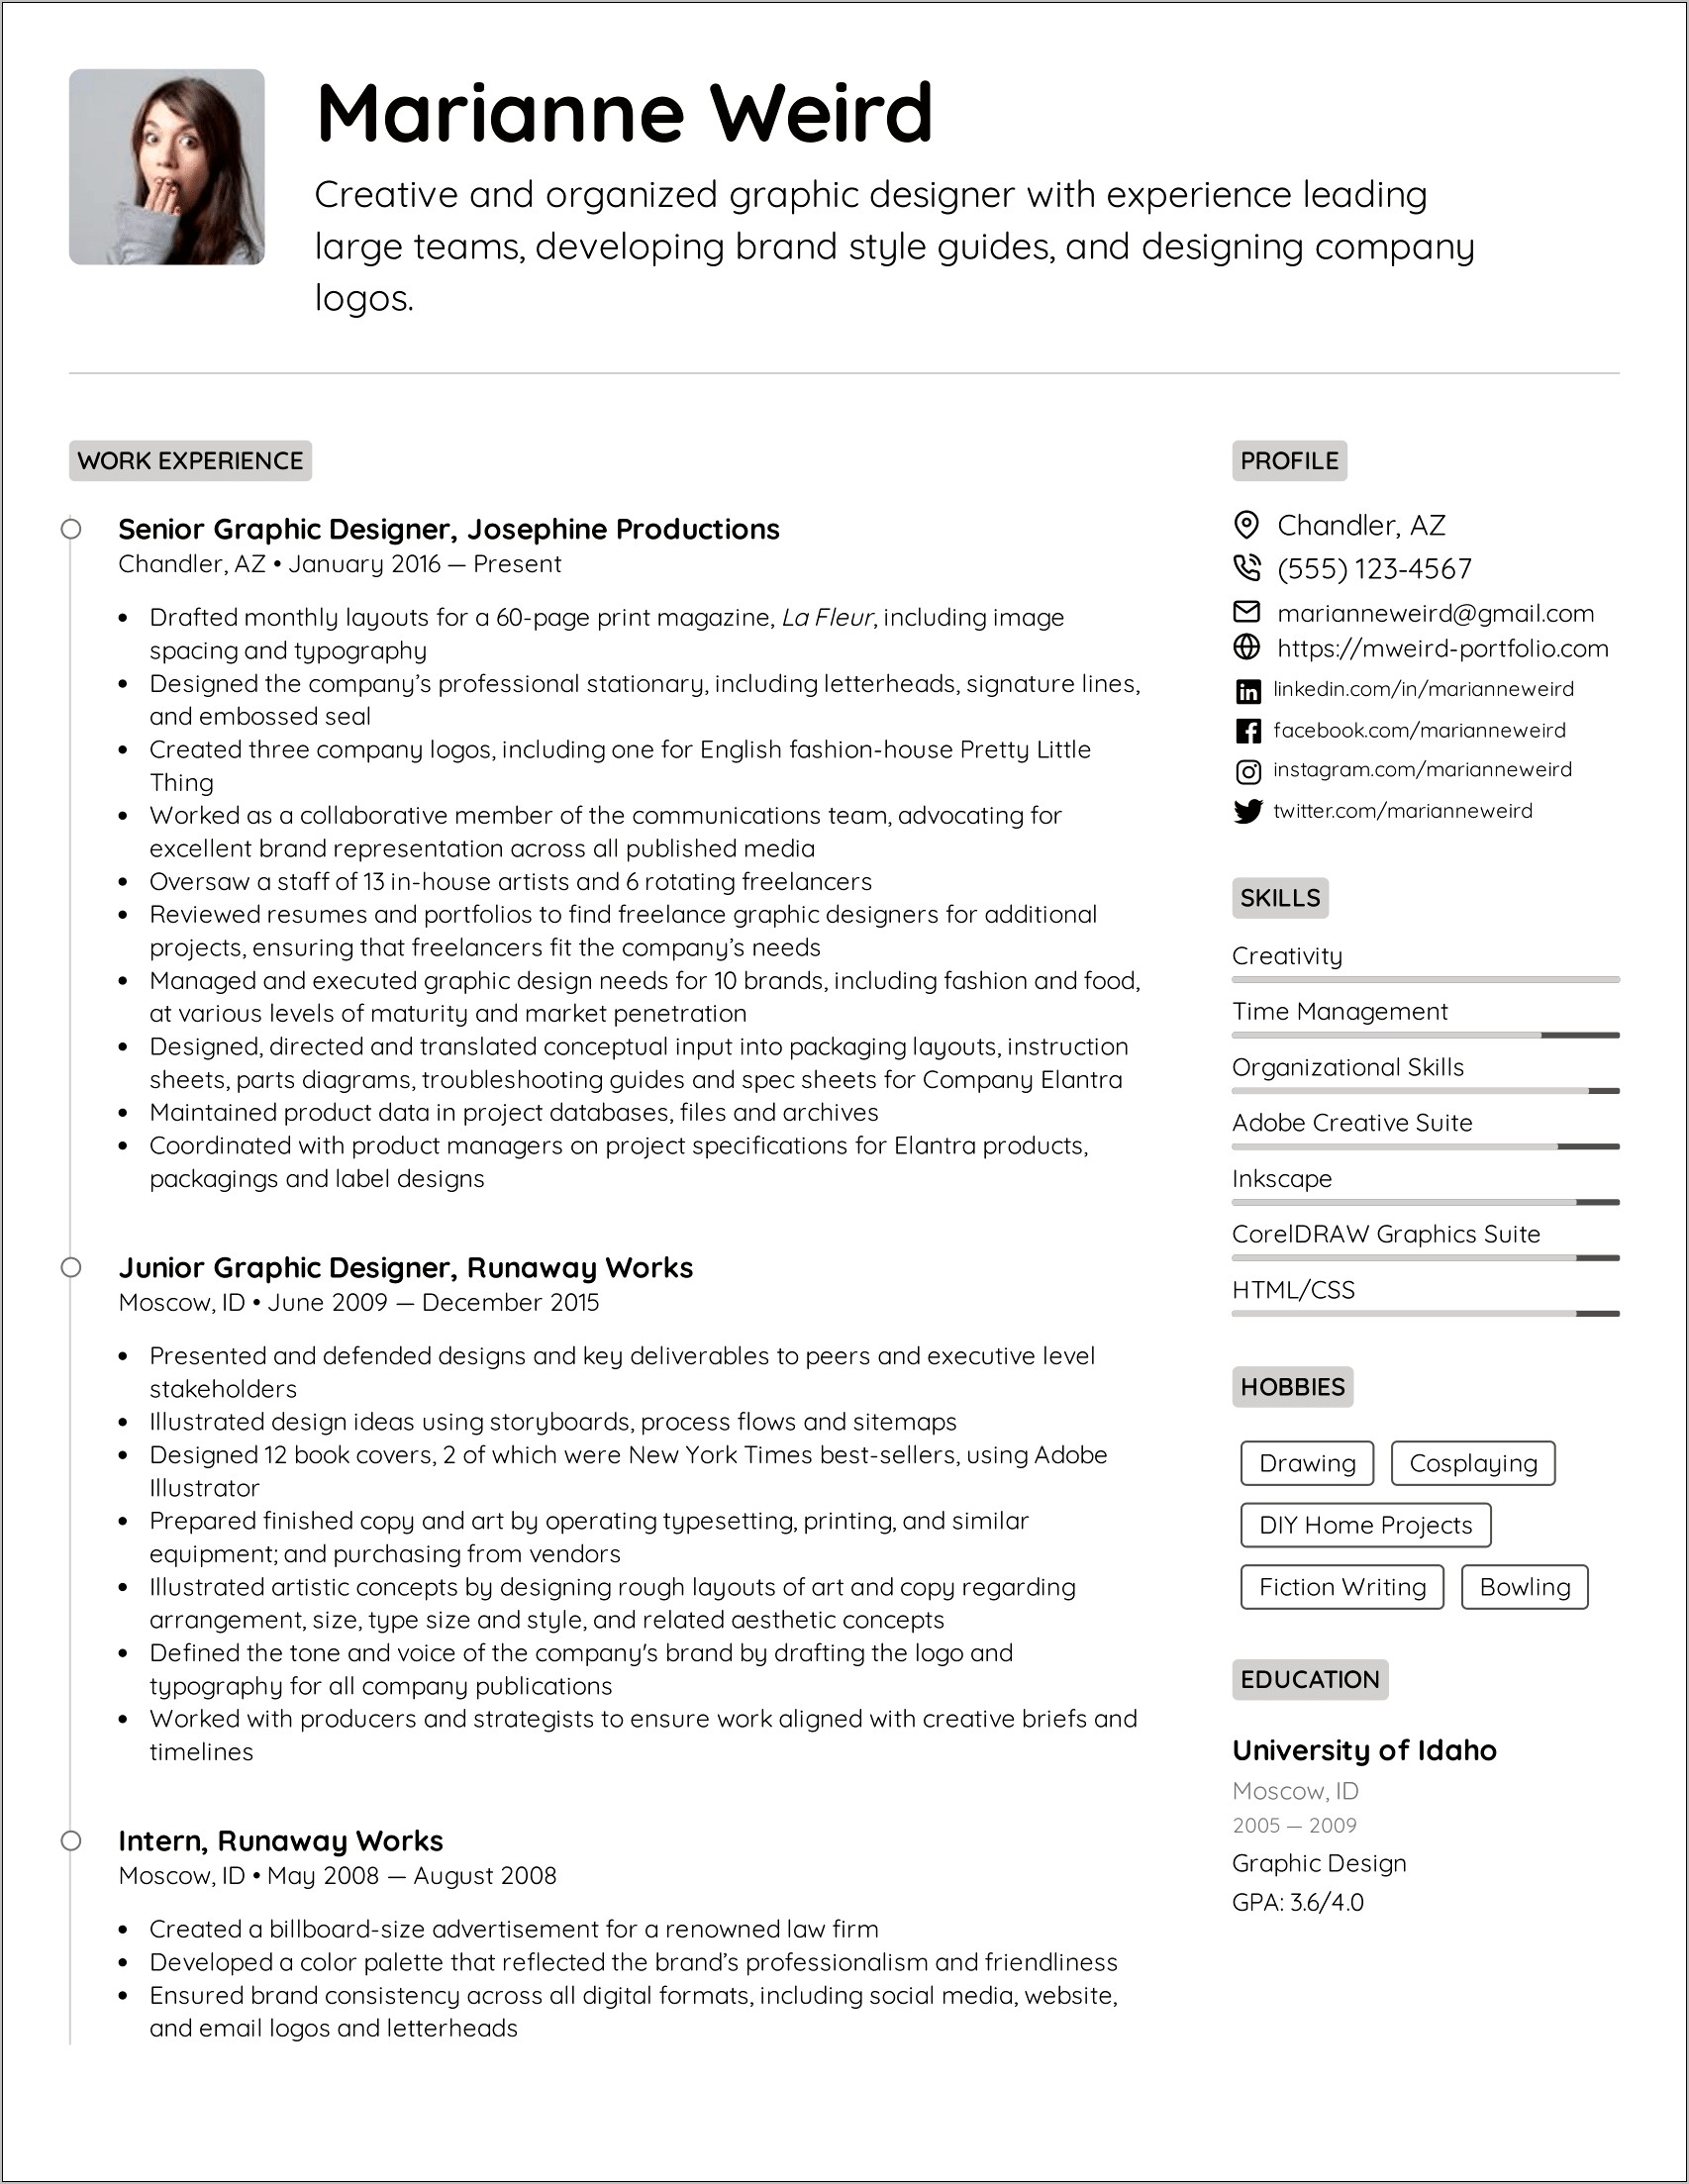 Resume Sample On Computer Skills